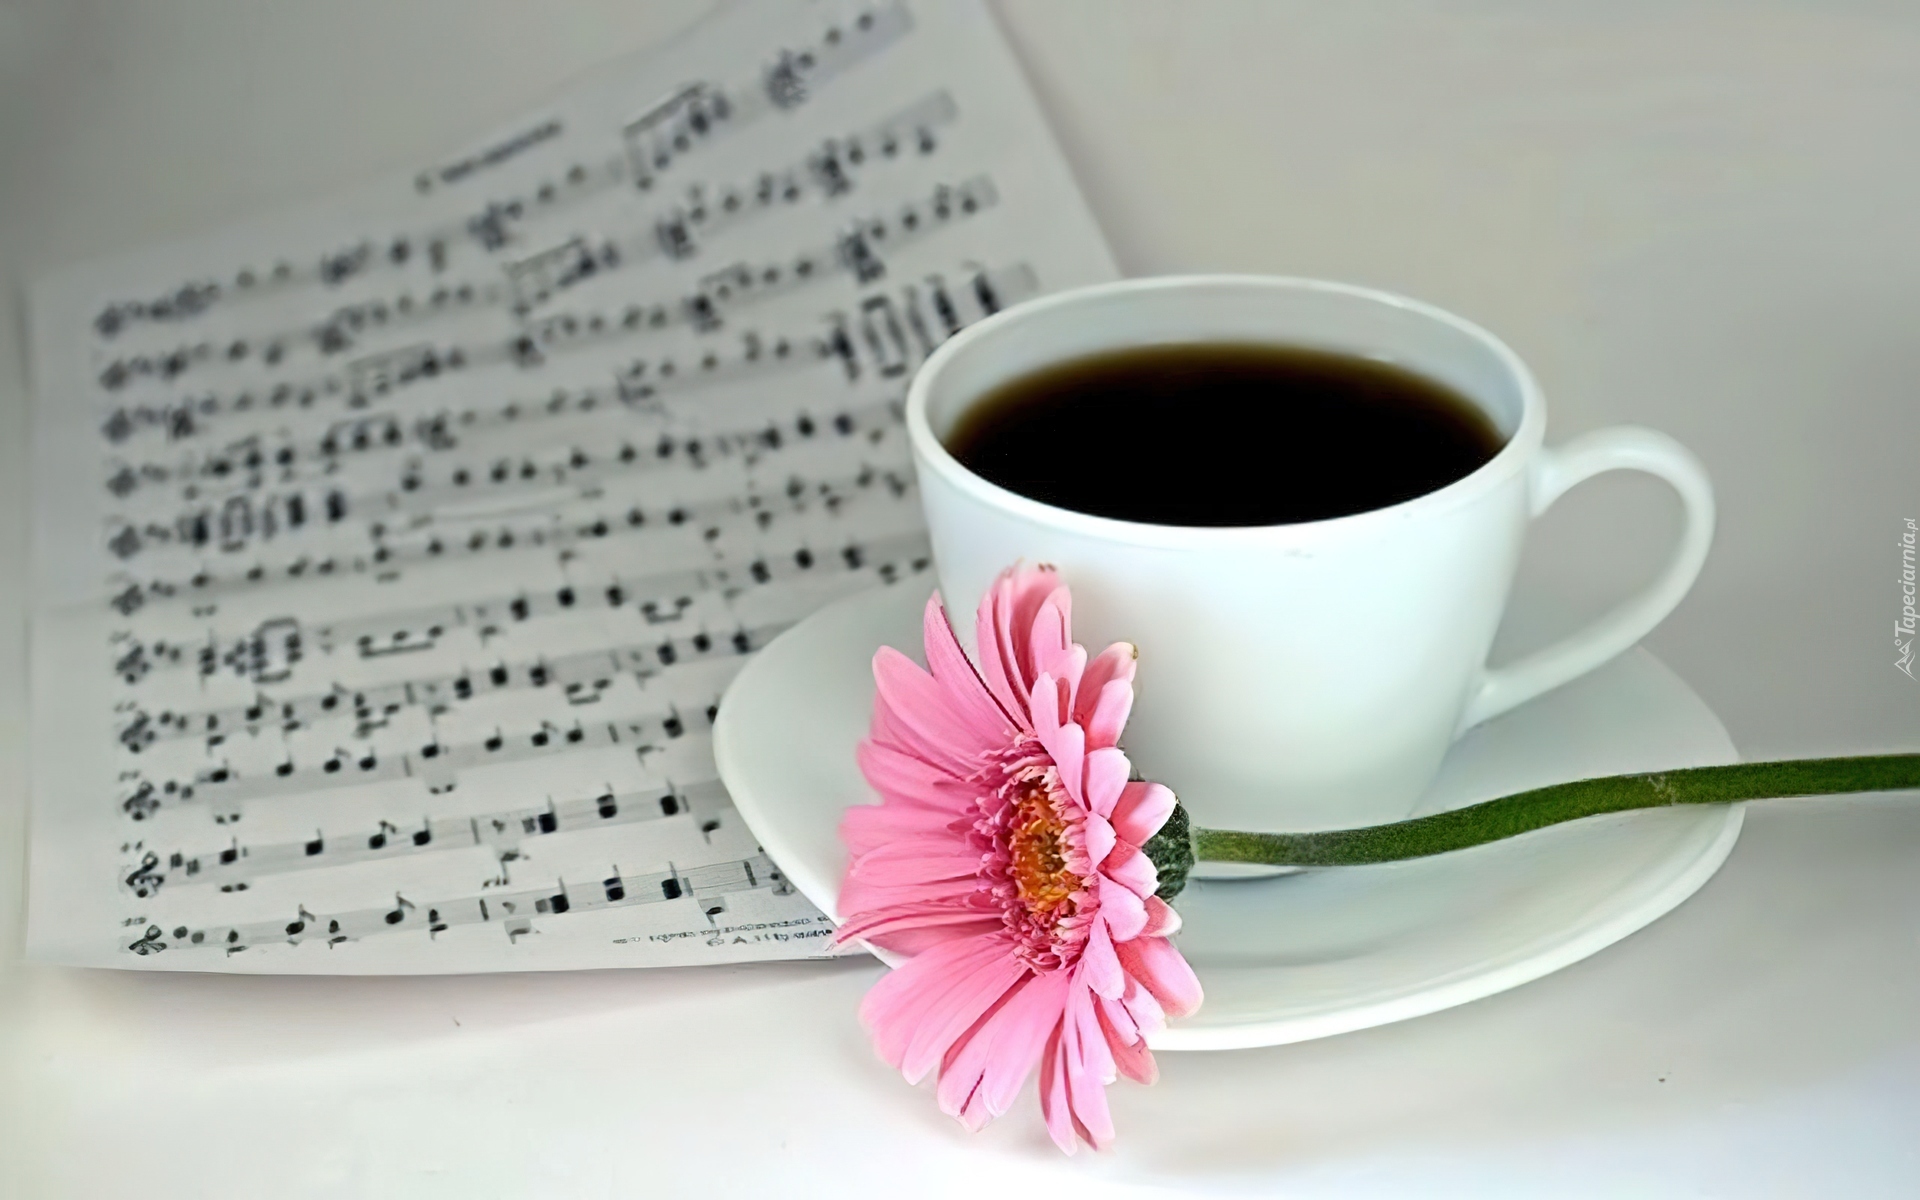 Мы сегодня с утра интересные песня. С добрым утром картинки красивые. Фото чашка кофе и цветы. Стильные пожелания с добрым утром. Кофе и цветы красивая композиция.